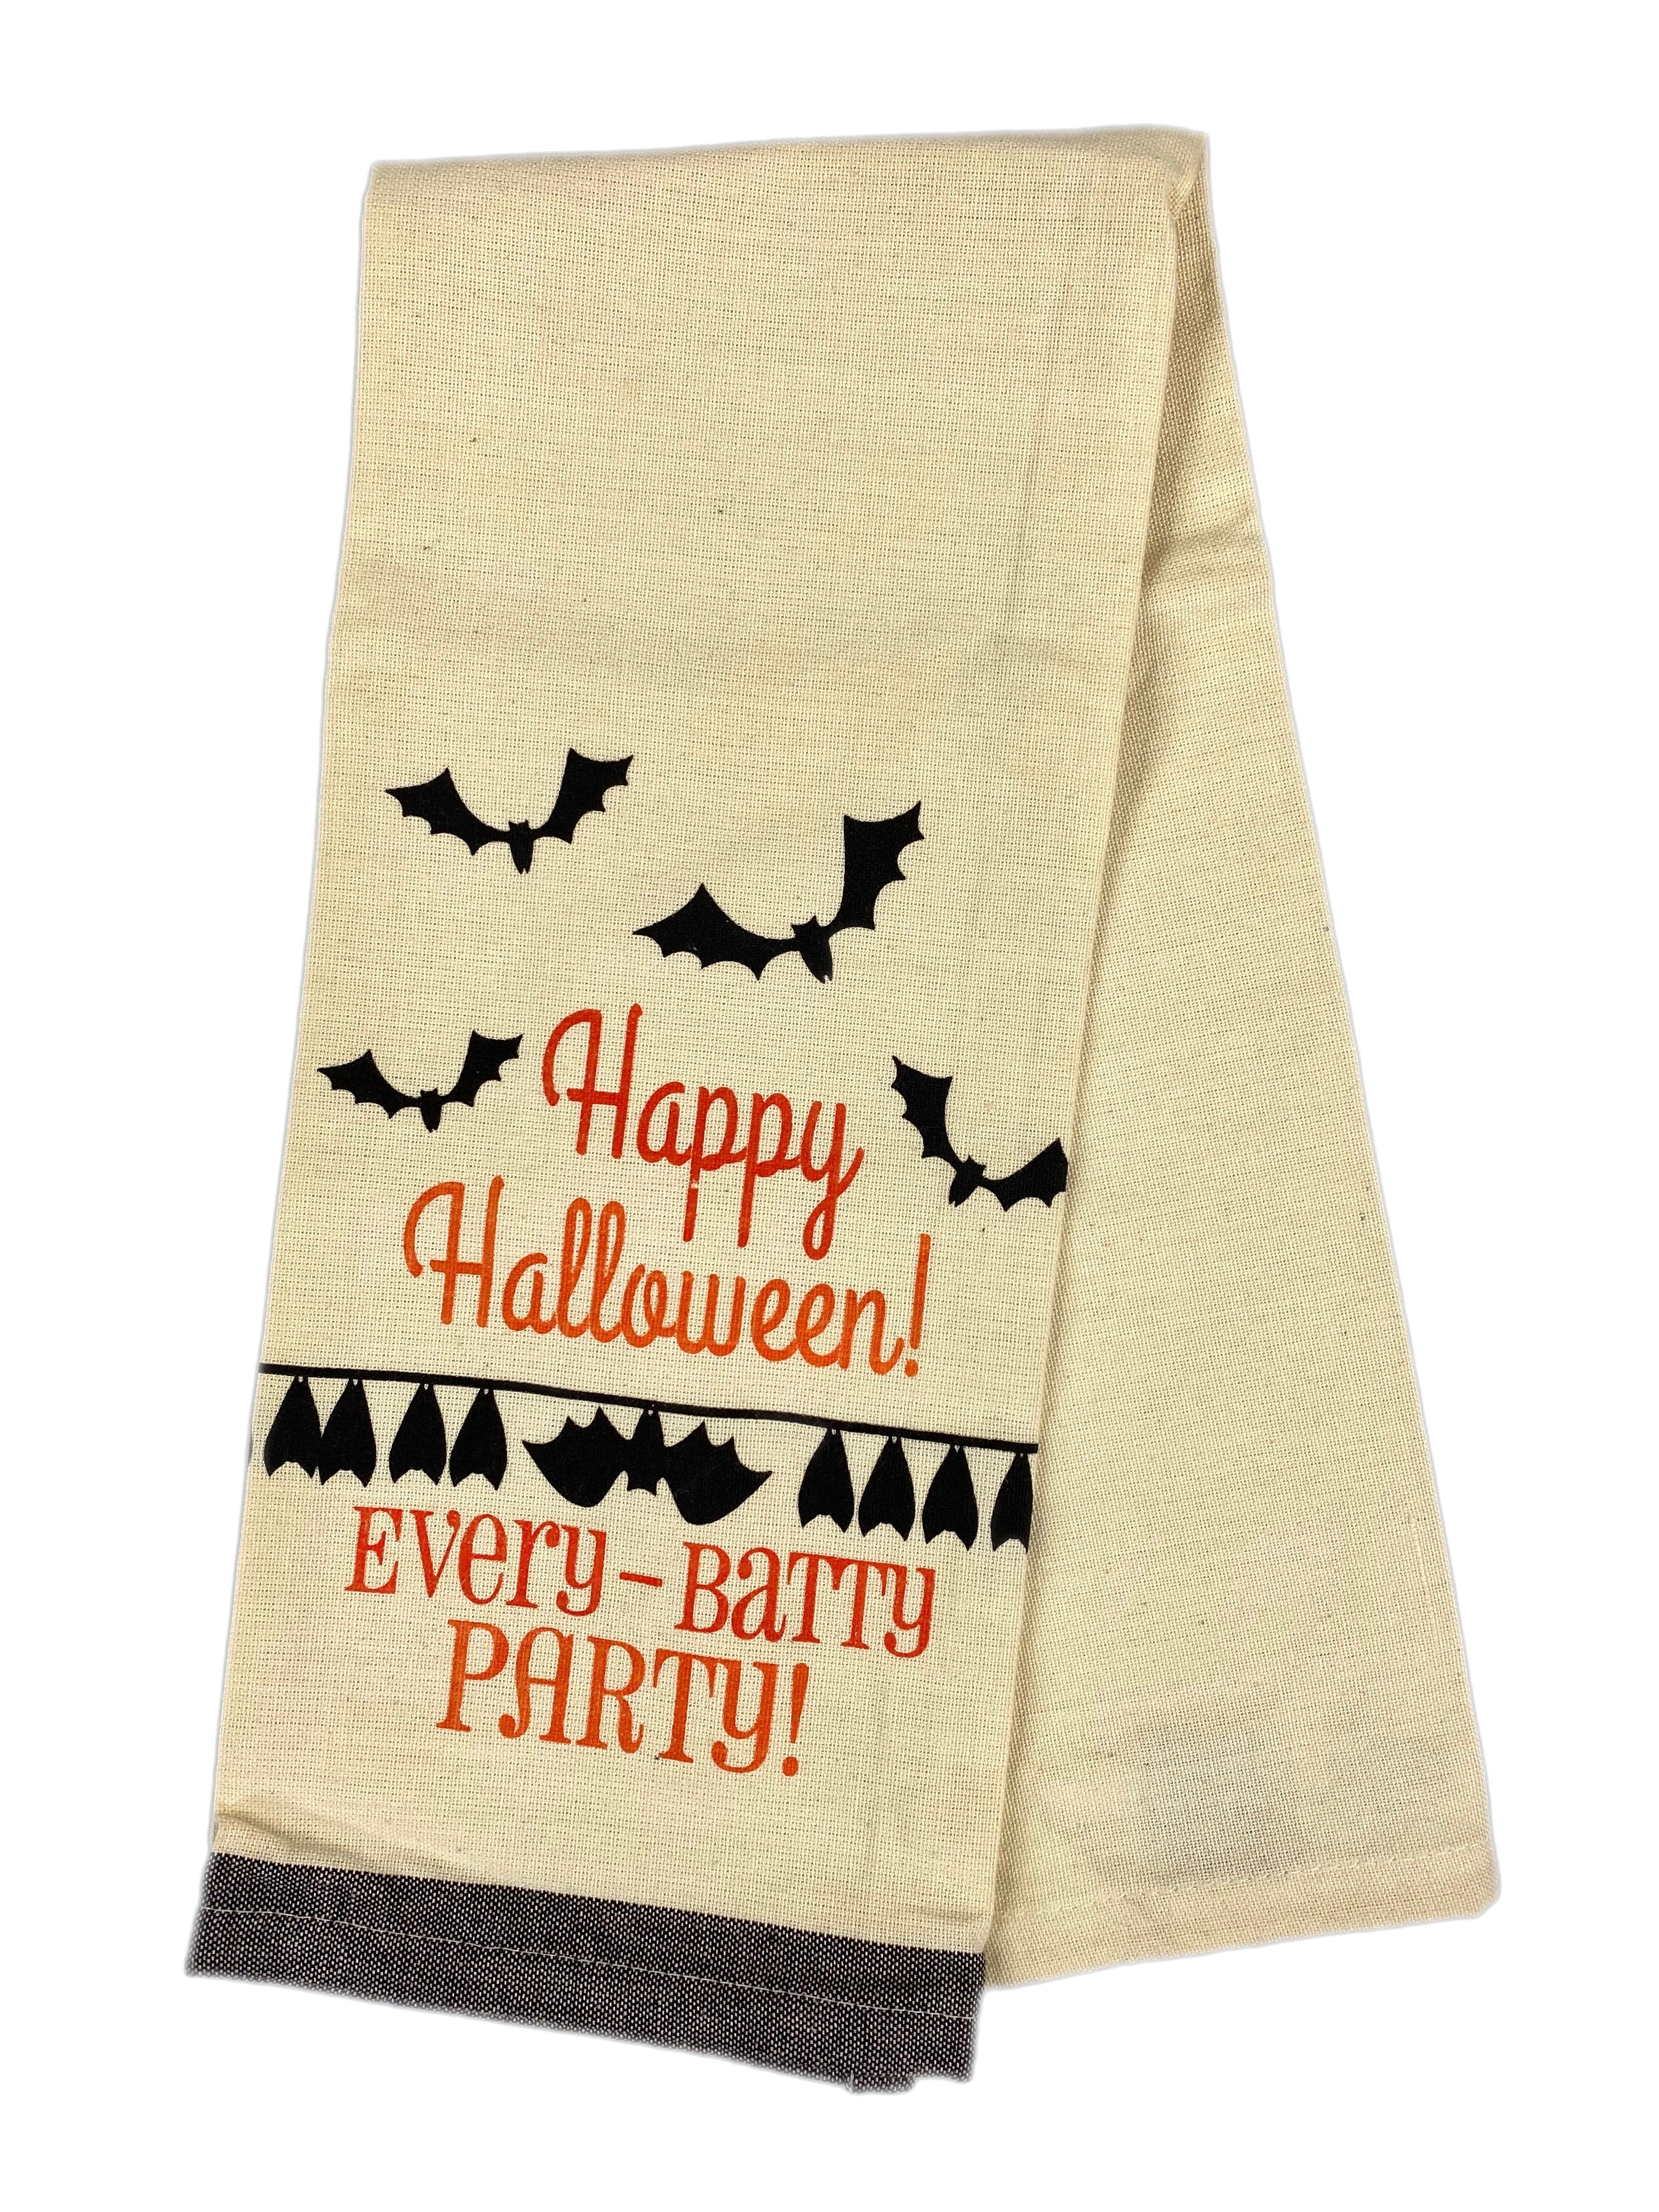 Happy Halloween! Every-Batty Party! Dishtowel    